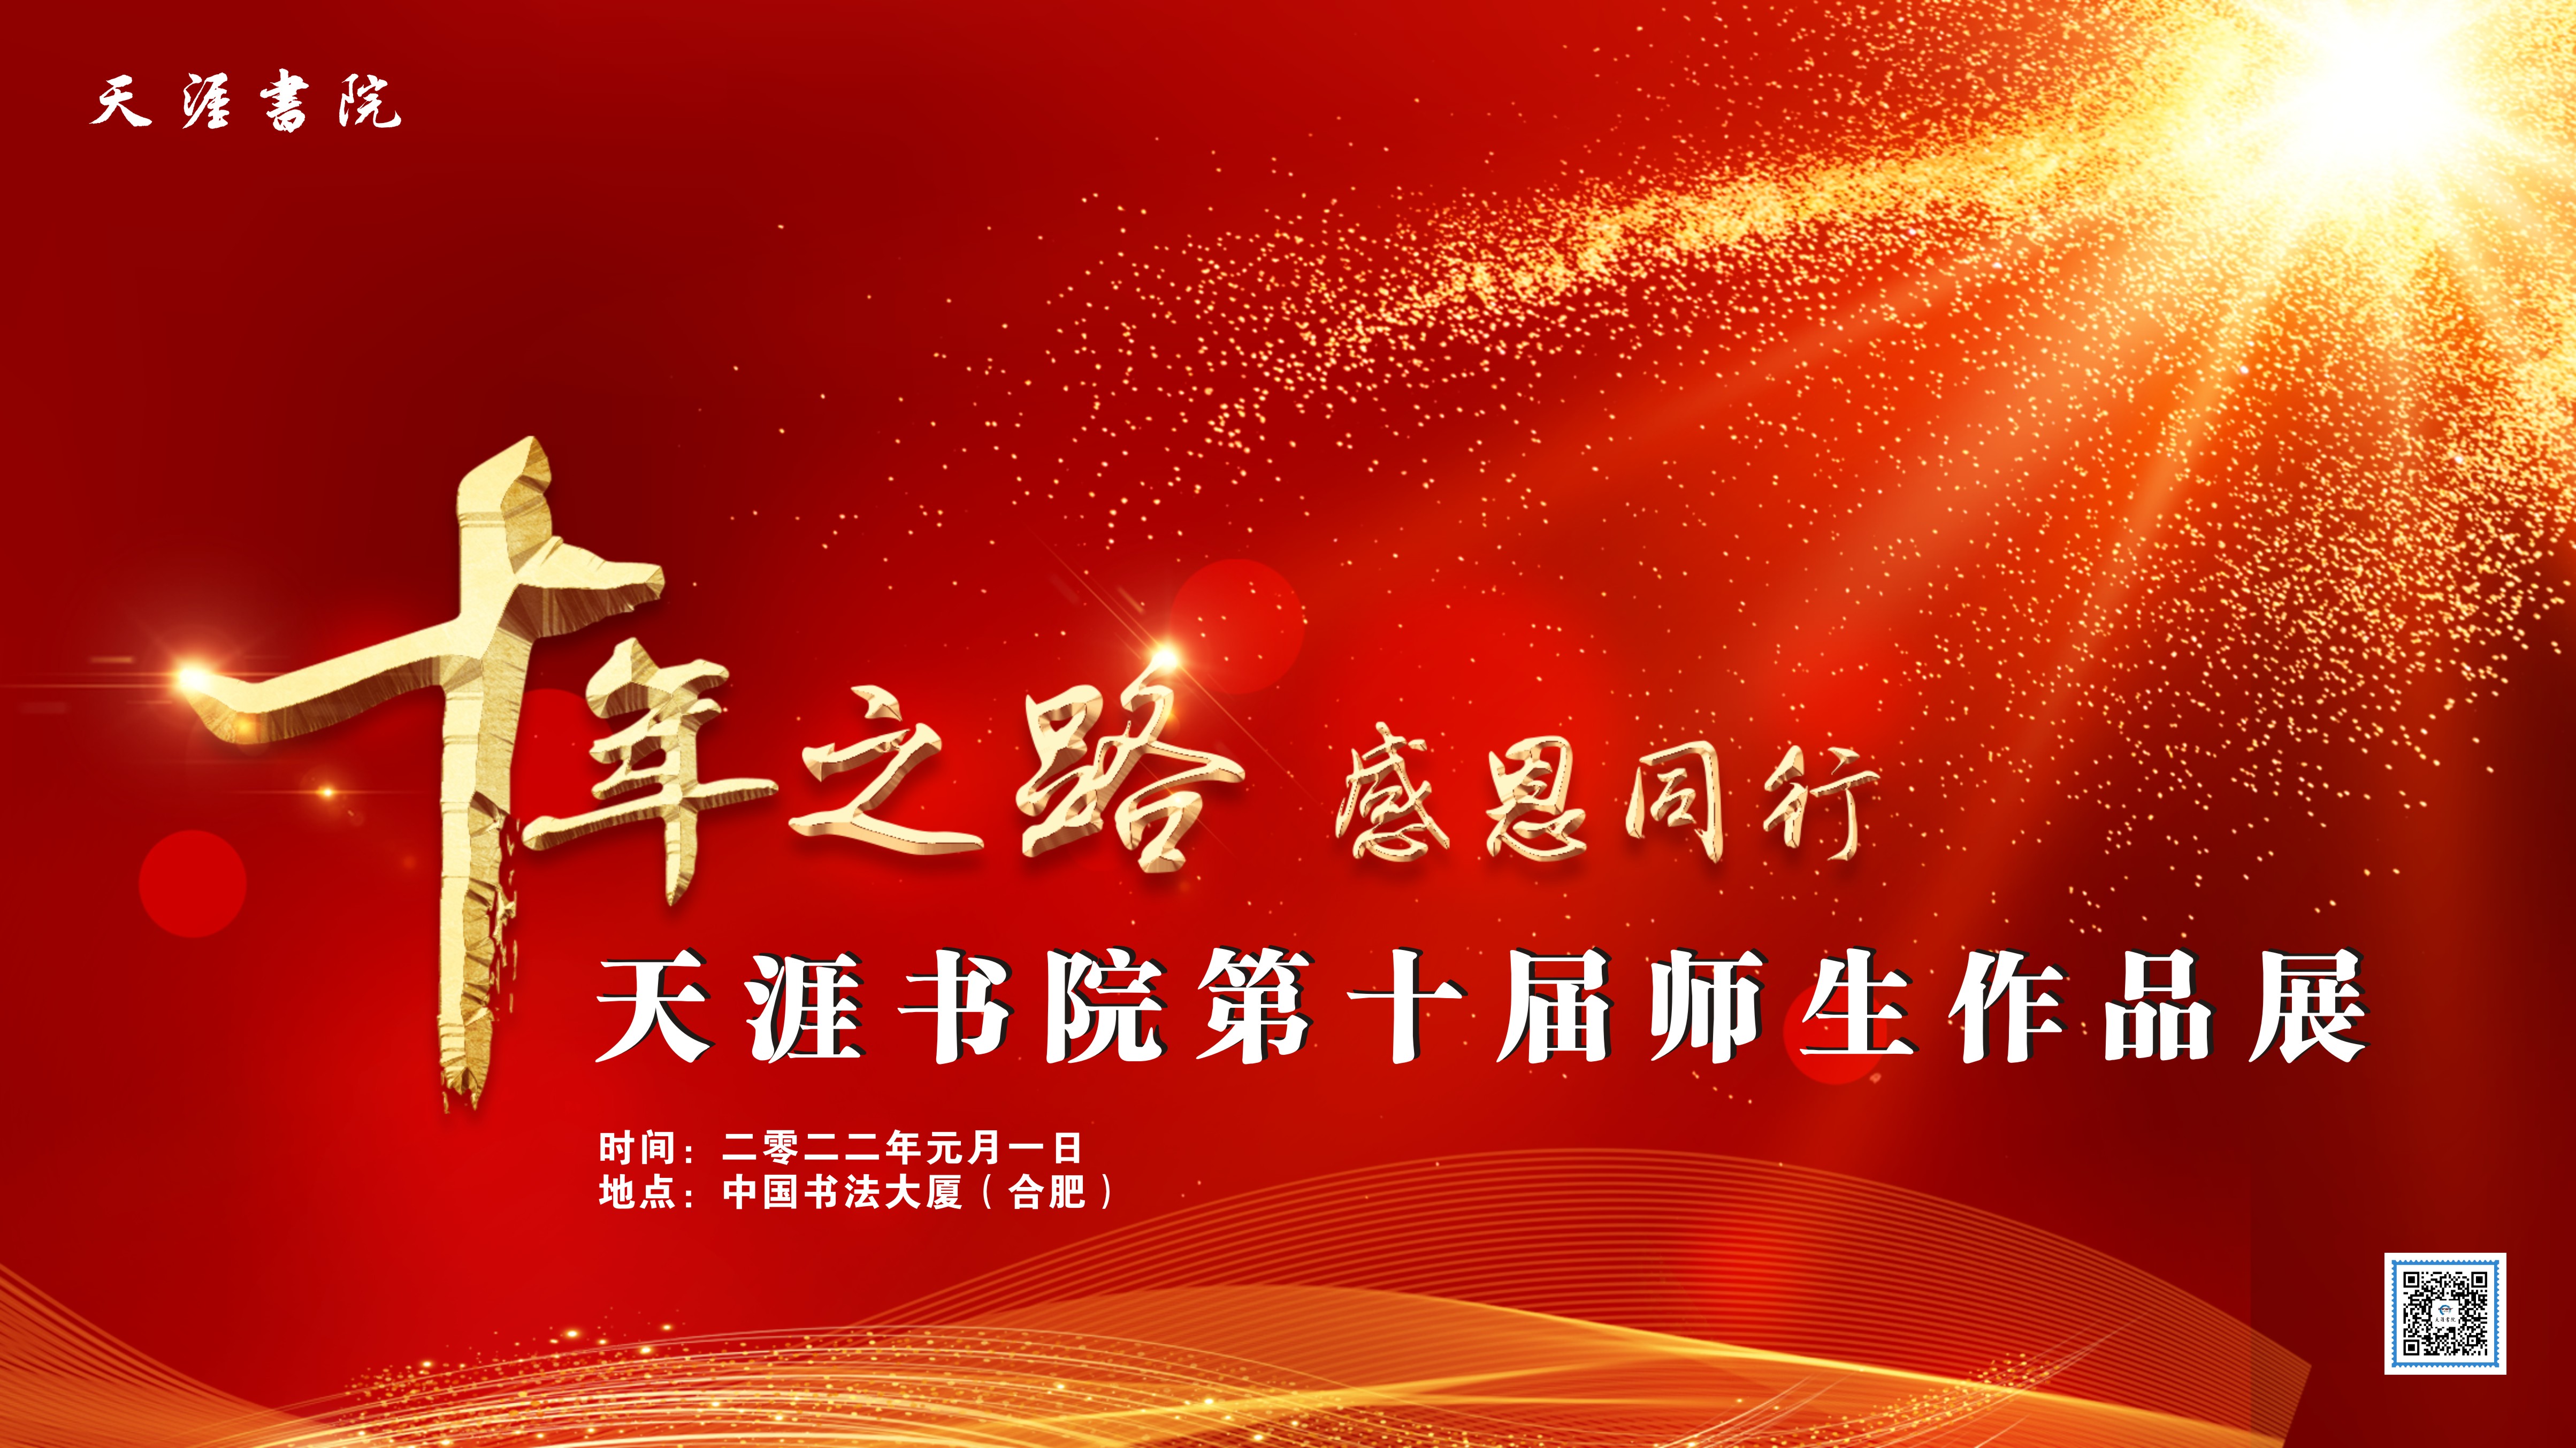 “安徽天涯书院第十届师生作品展在中国书法大厦举办